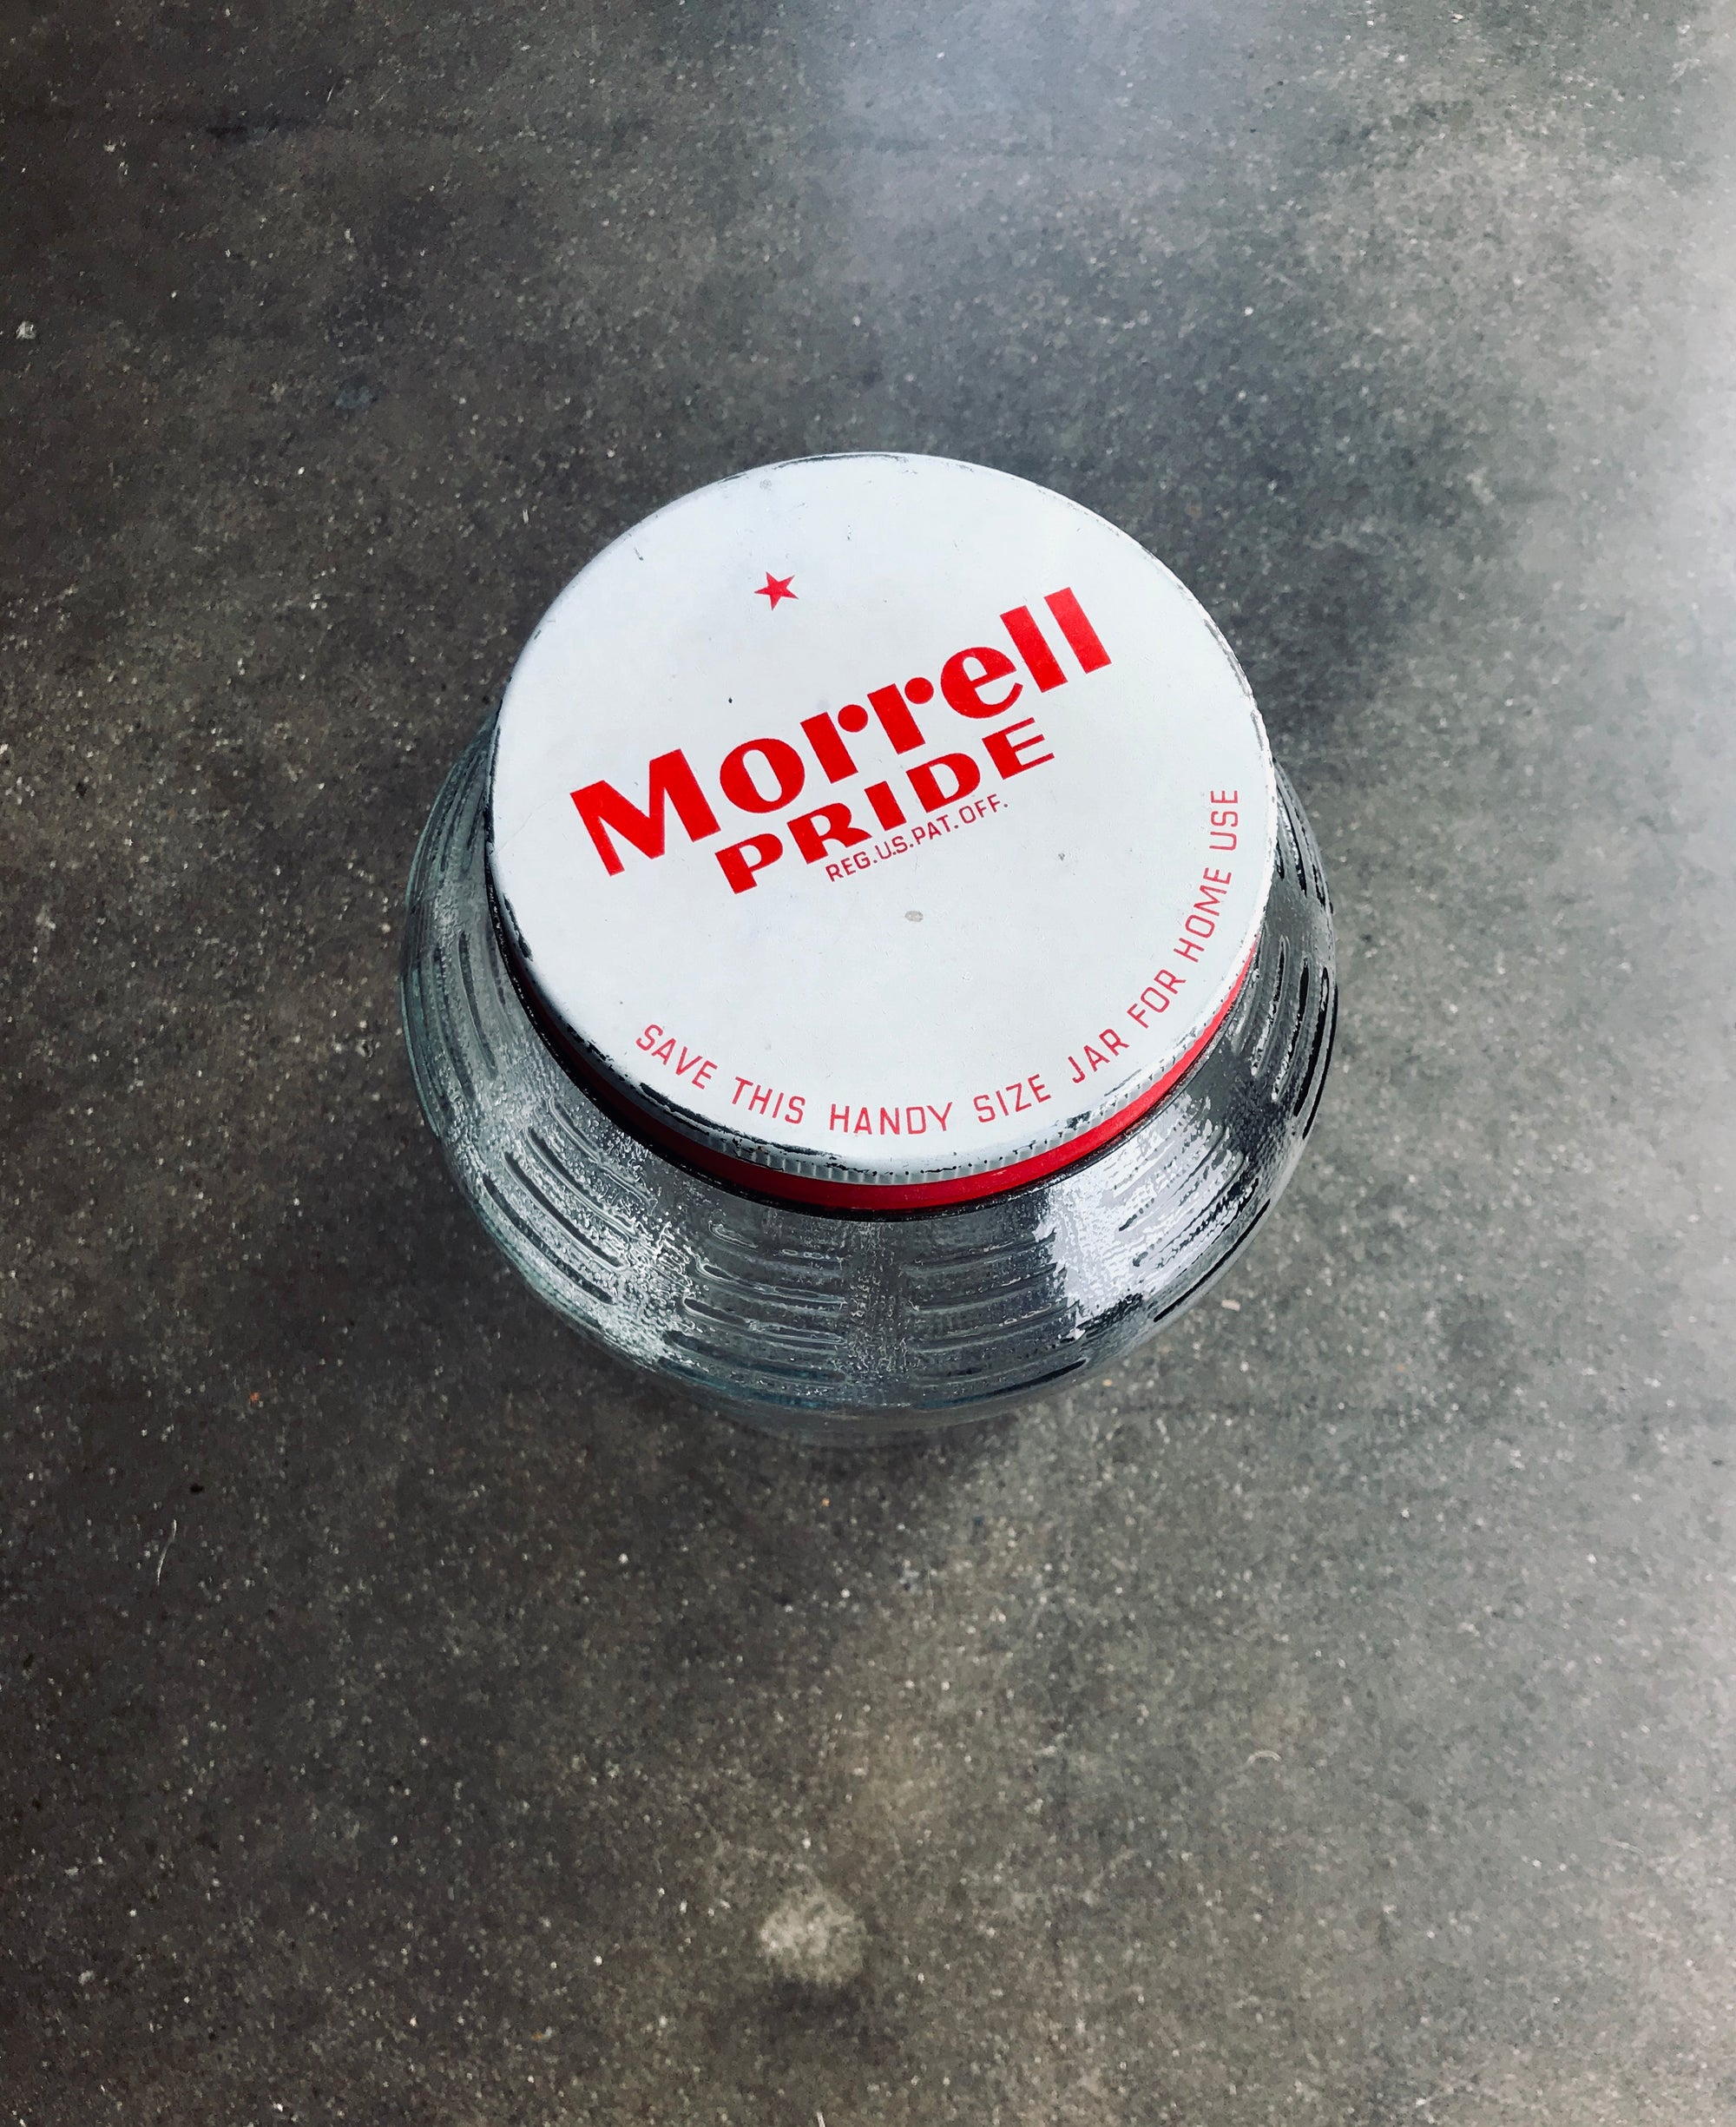 Morrell Pride Vintage Jar